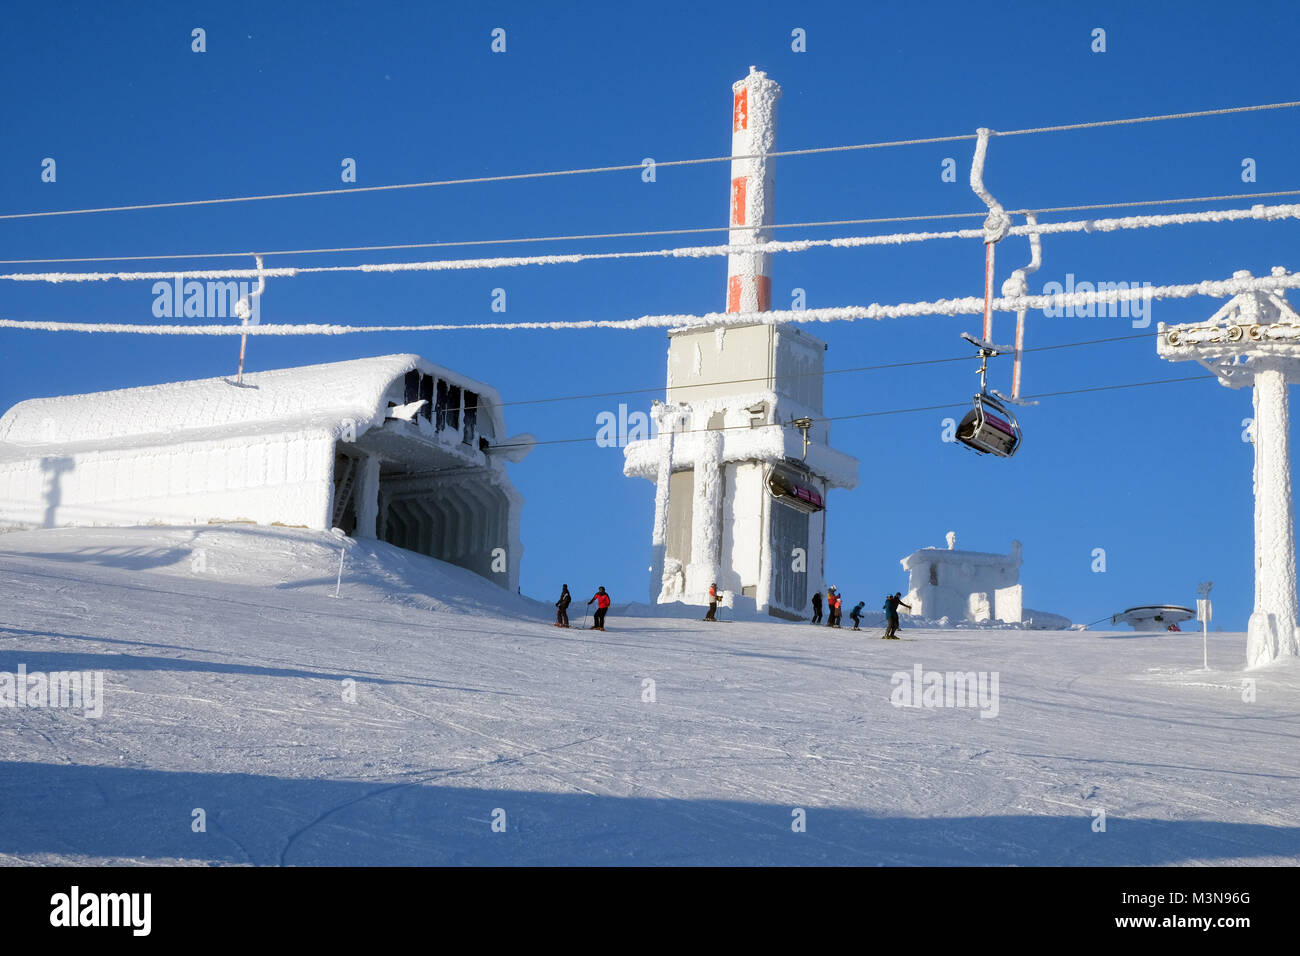 Le télésiège et la gare supérieure de la station de ski de Ruka en Finlande Banque D'Images